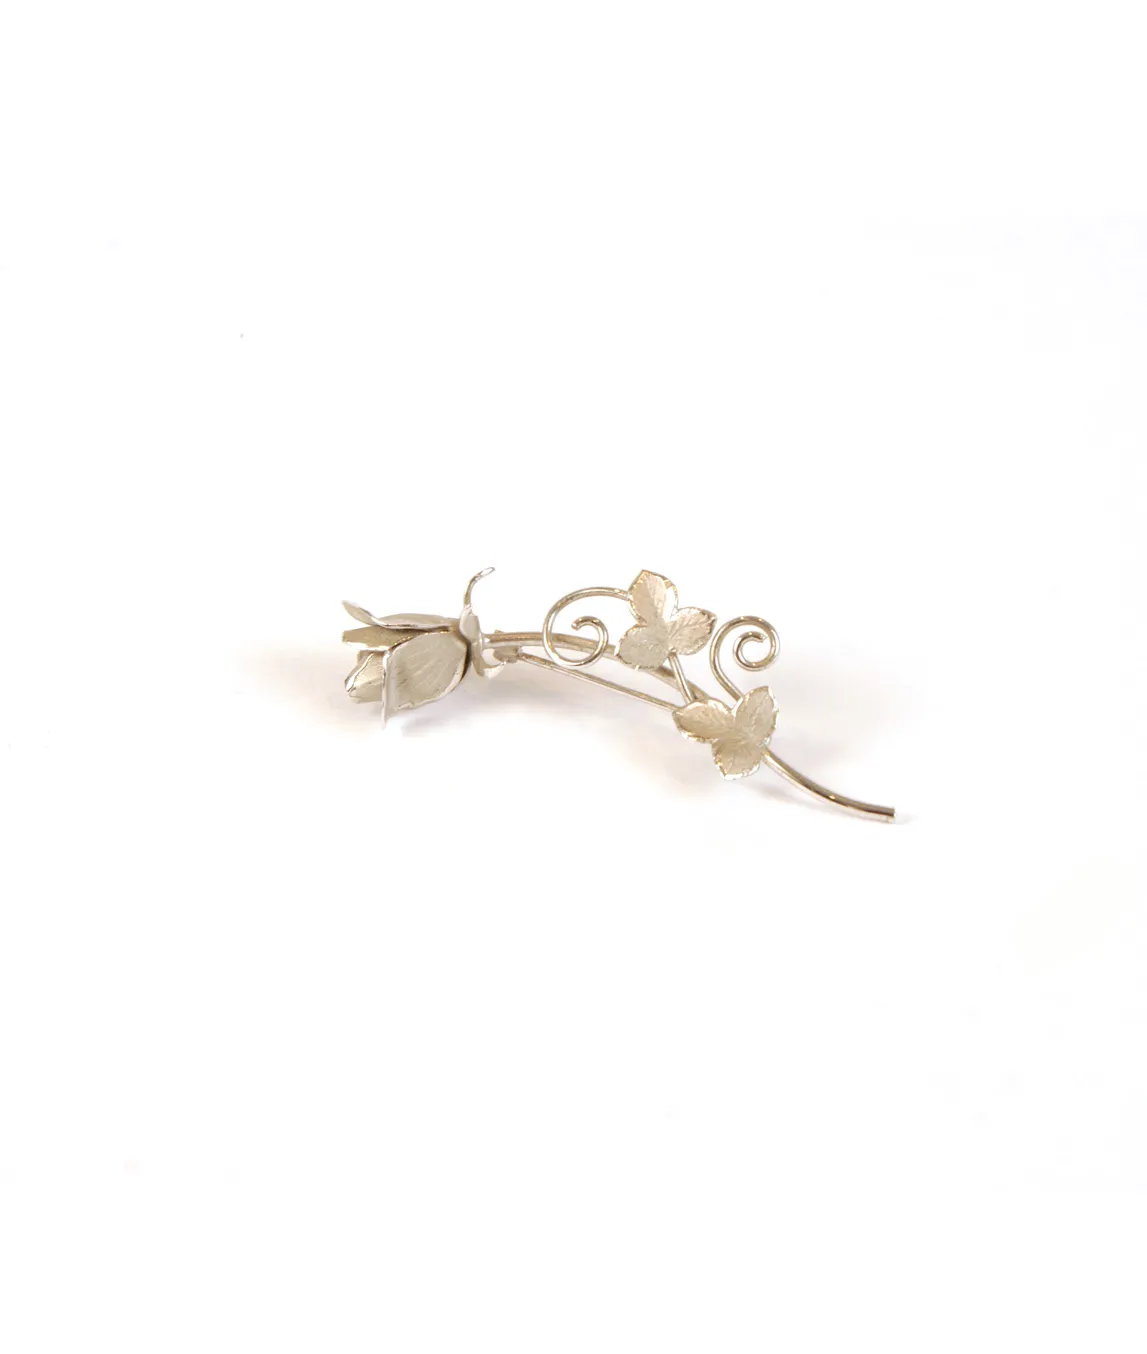 Silver rose brooch by Ecco